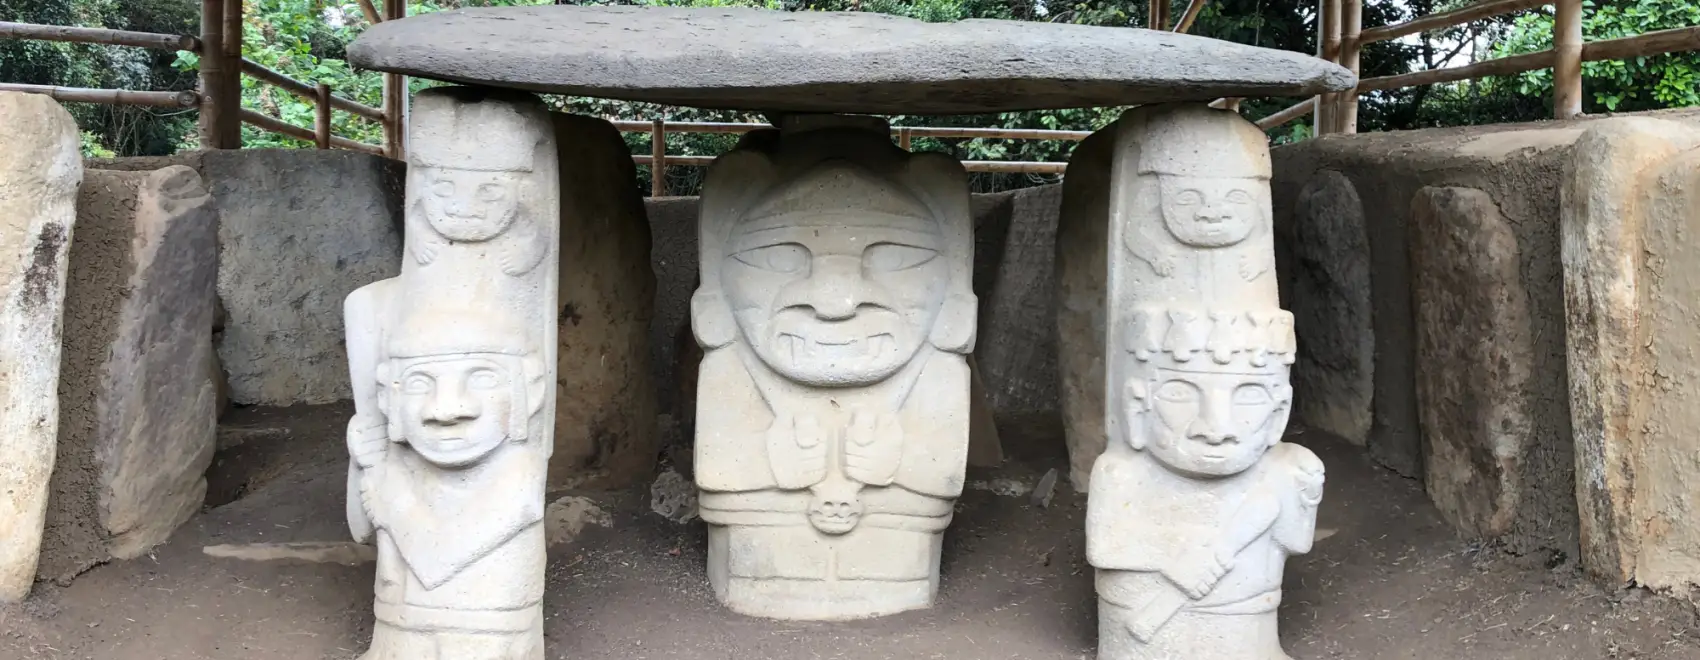 Visiting San Agustín Archeological Park in Colombia